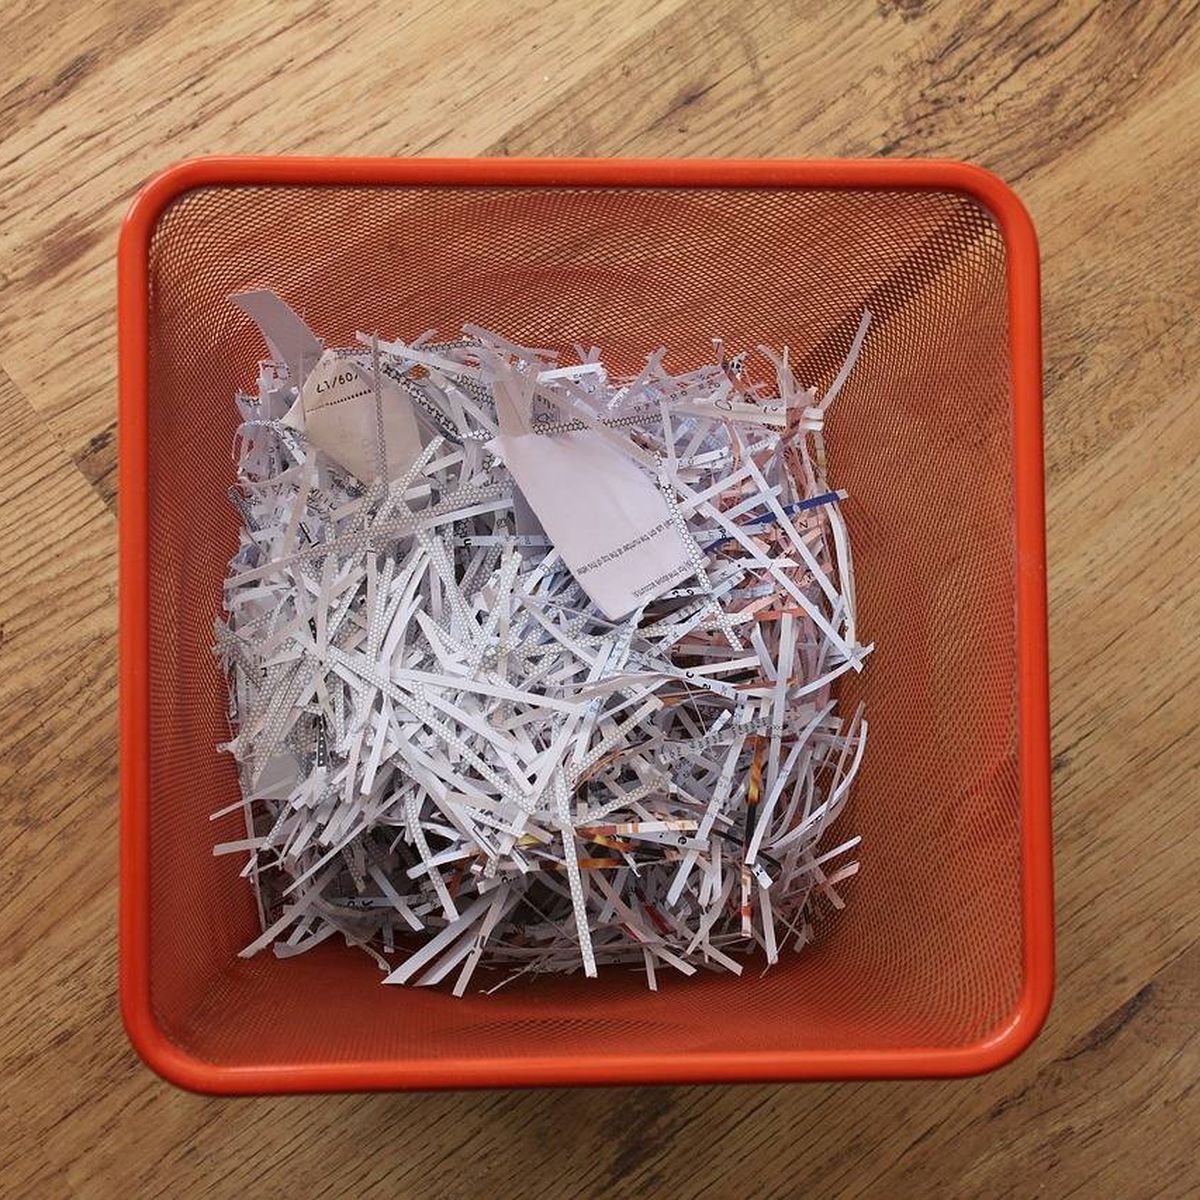 9 ideas útiles para reutilizar cajas de cartón